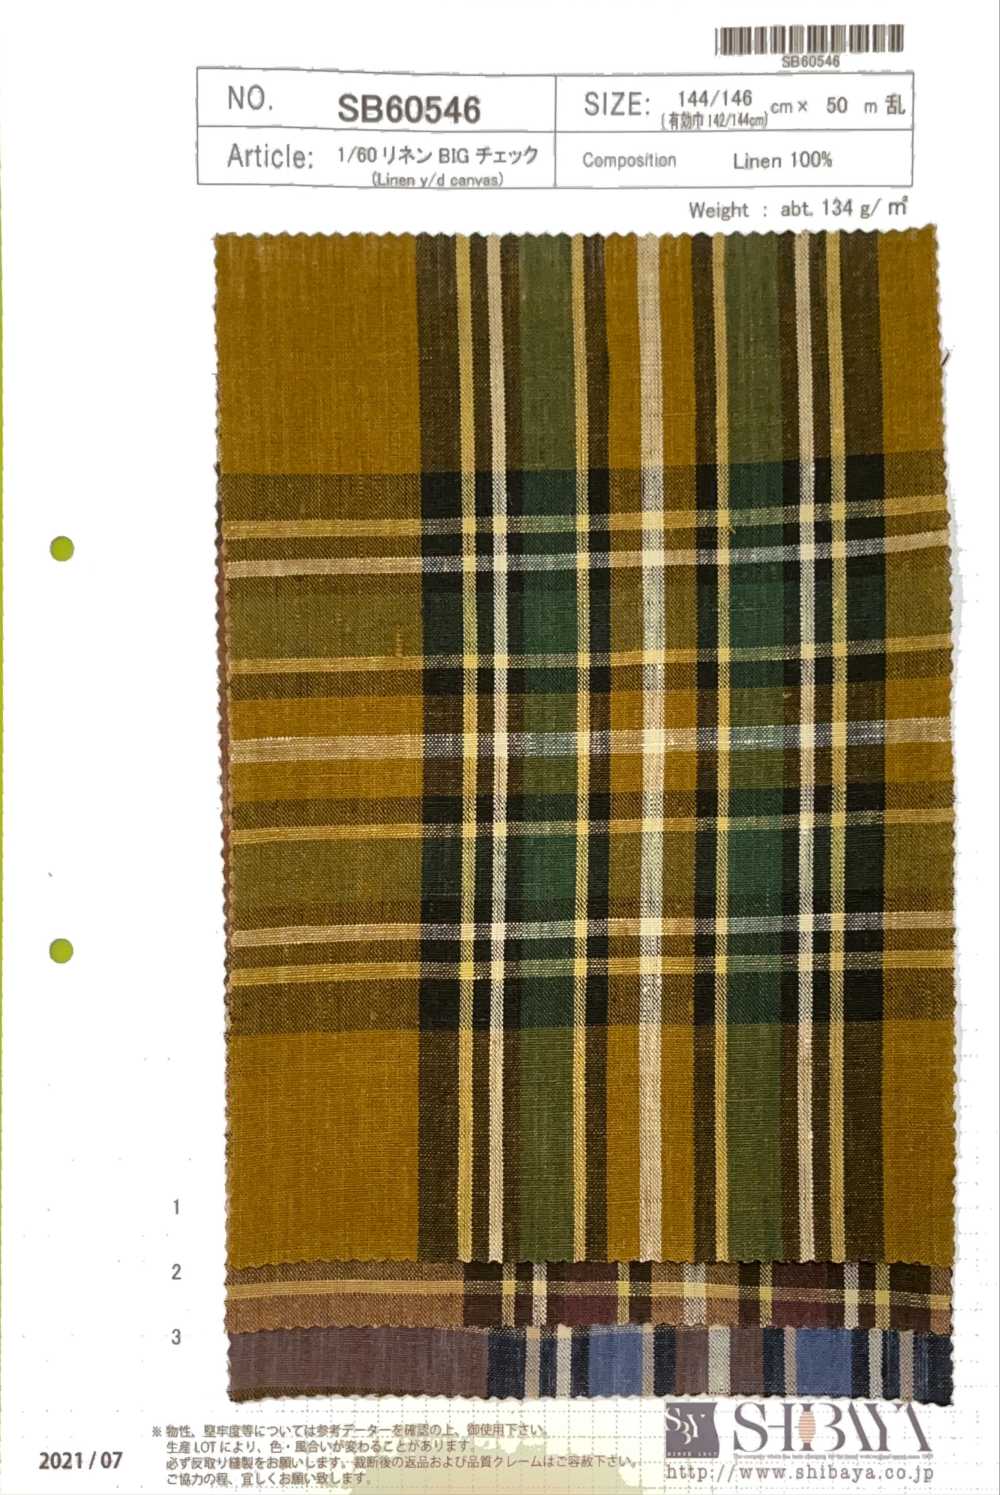 SB60546 1/60 Linen Big Check[Textile / Fabric] SHIBAYA